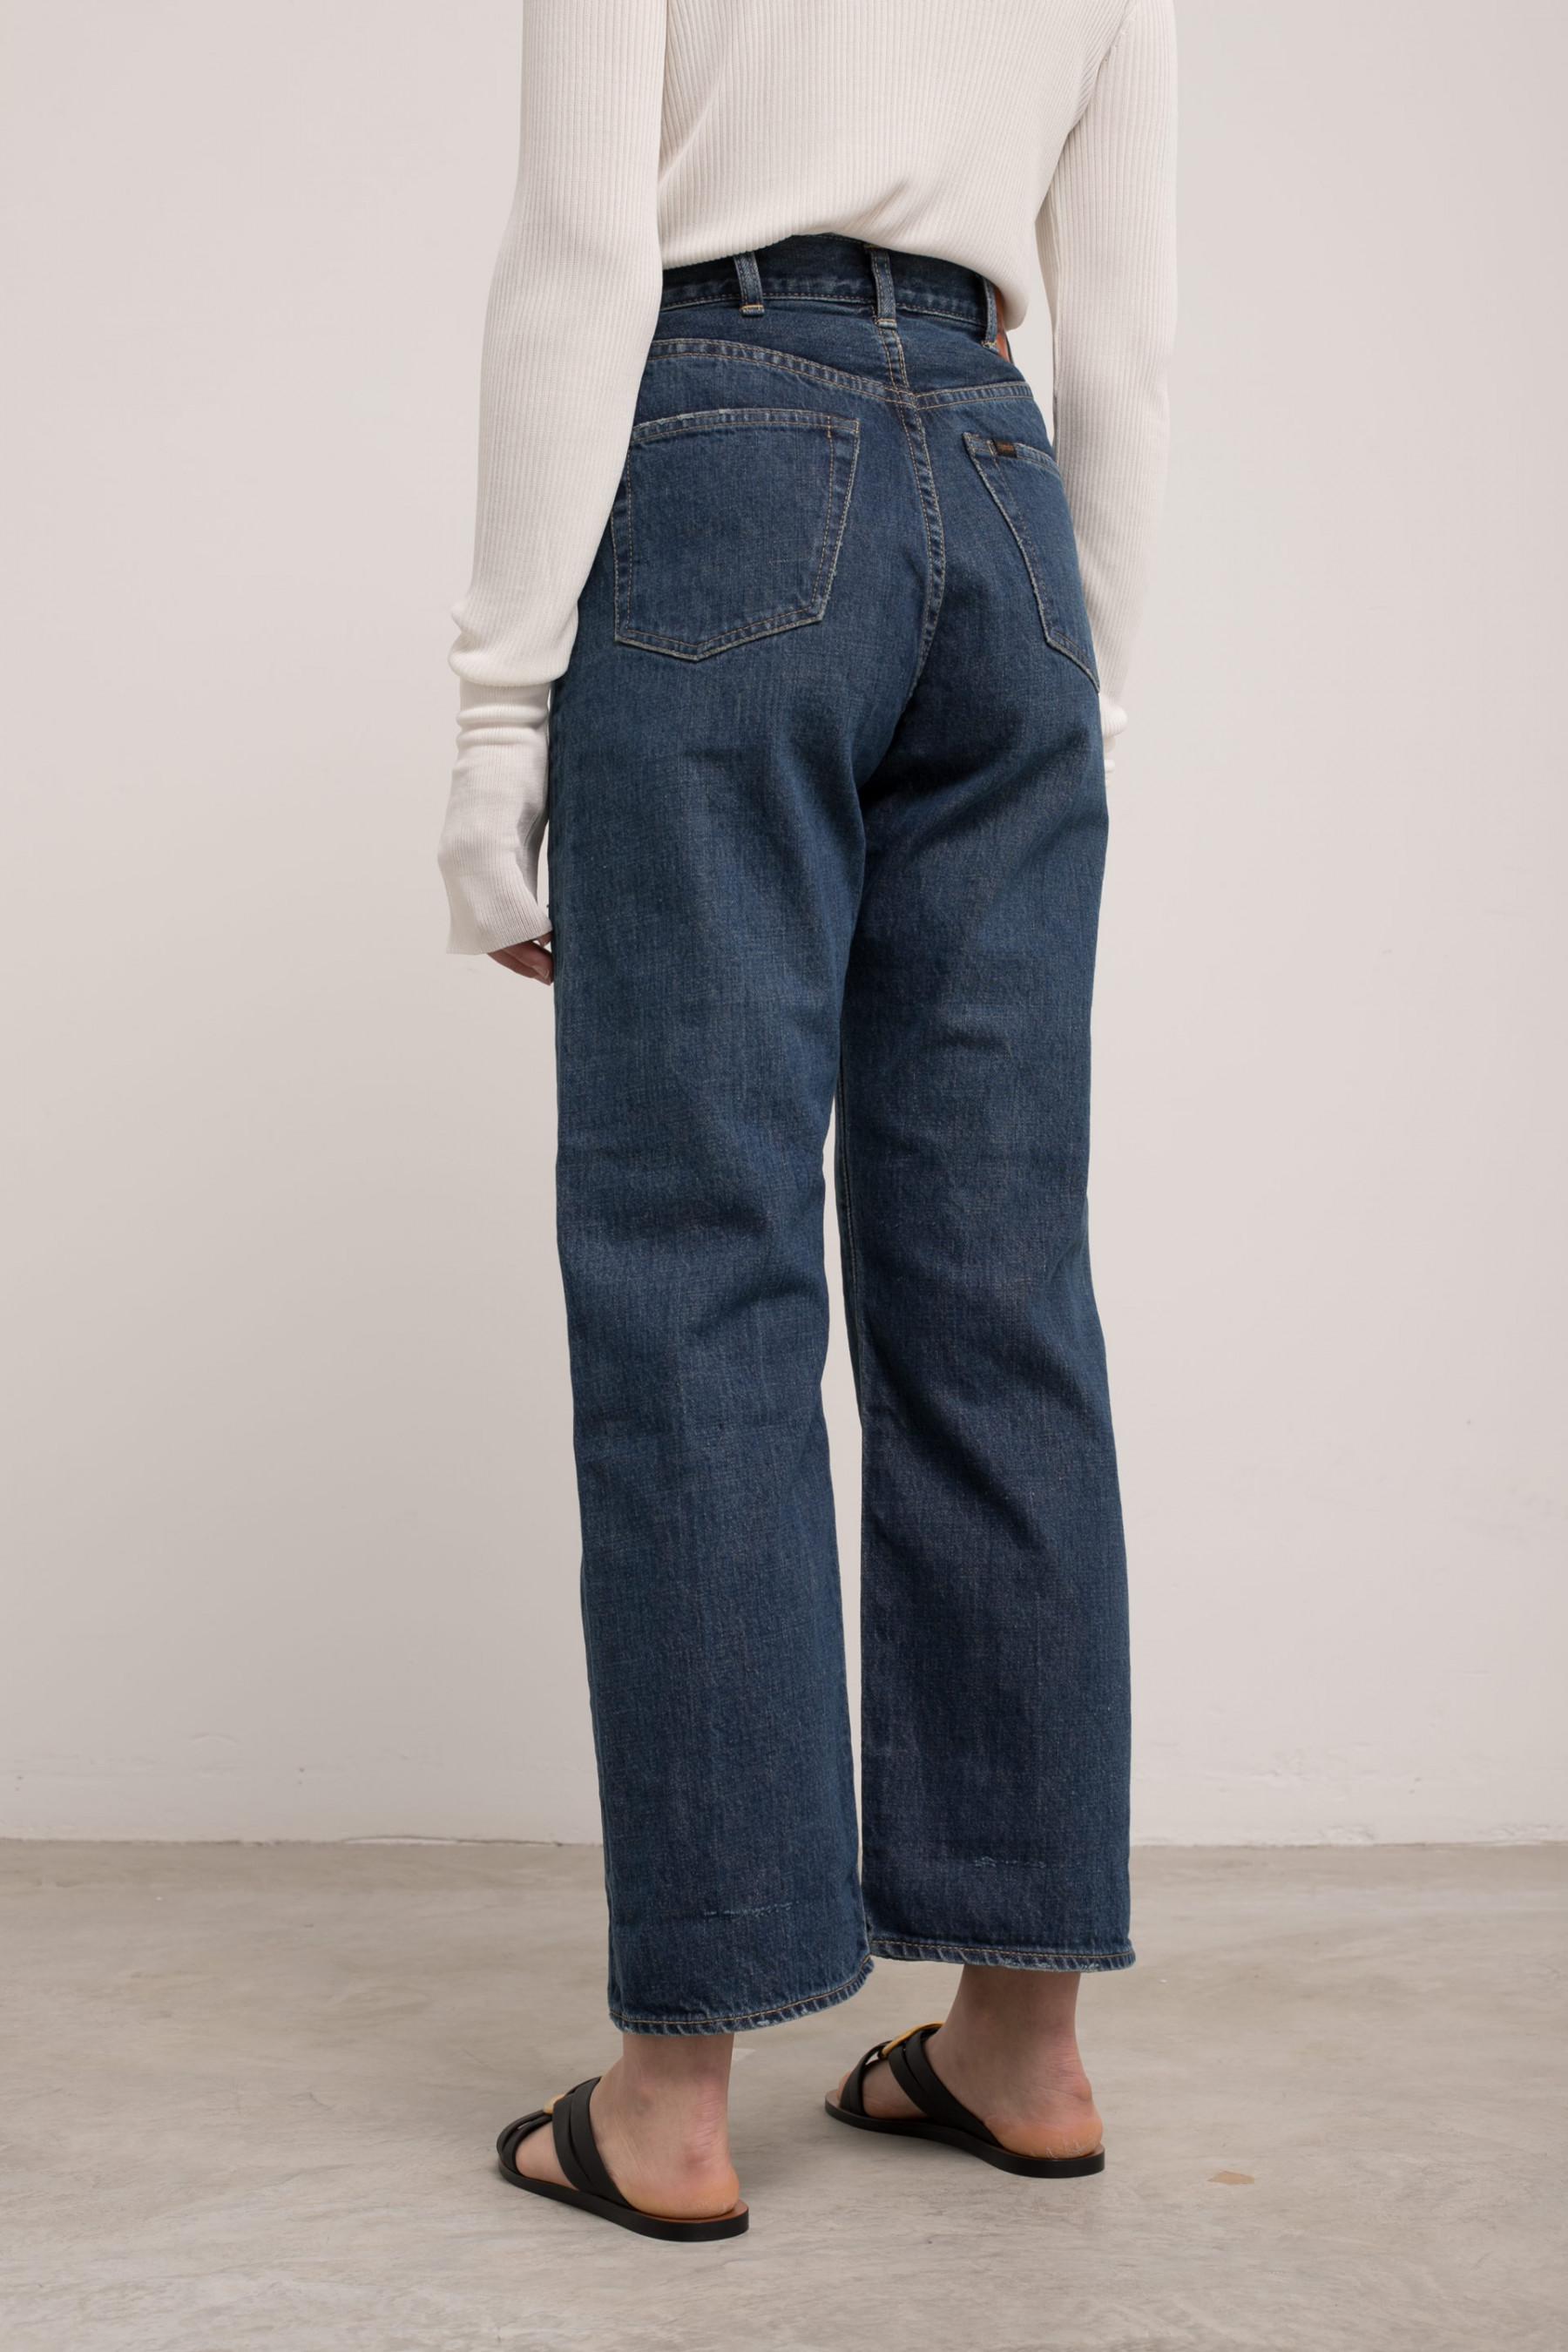 Chimala Denim Monroe Cut Jeans in Blue - Lyst